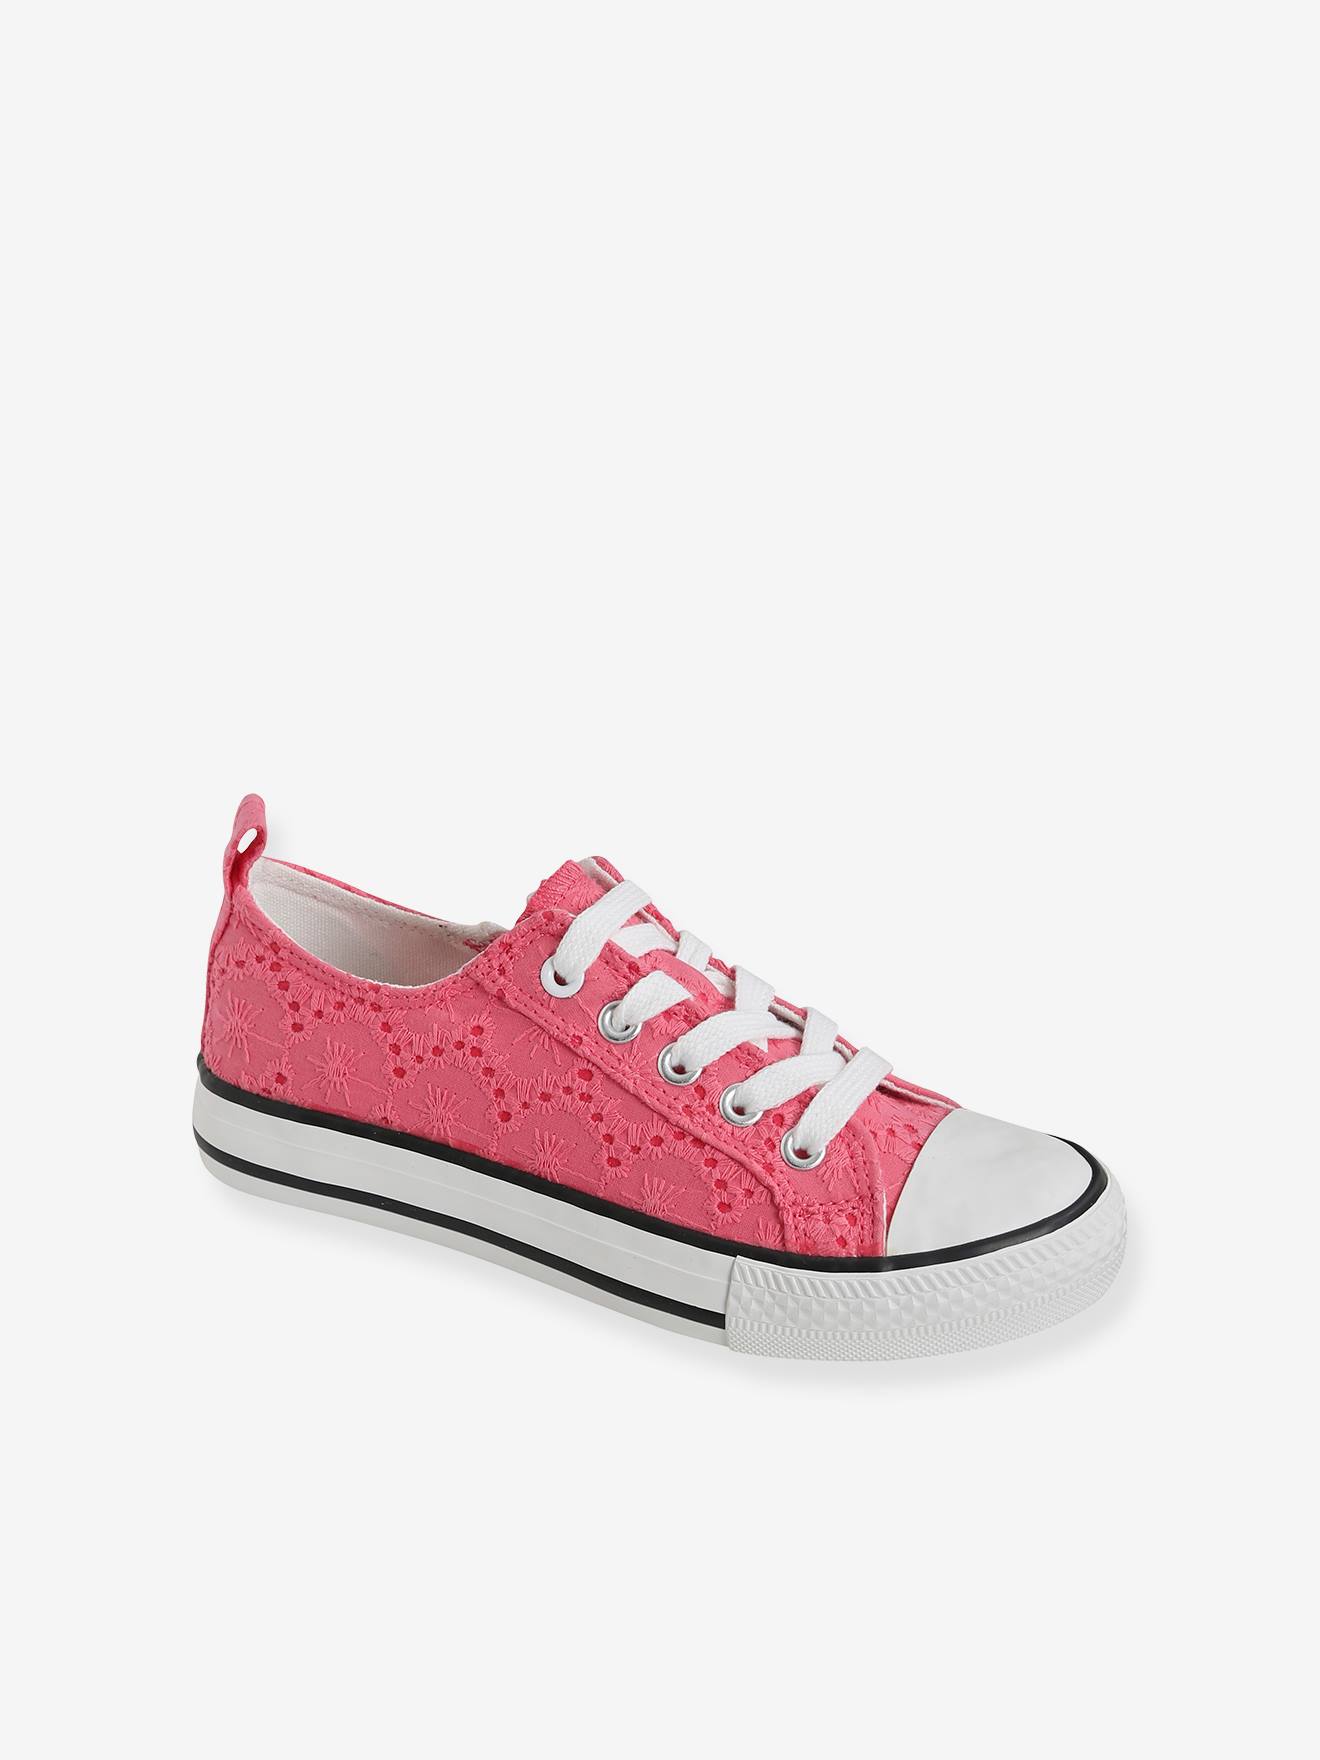 Stoffen decoratieve sneakers voor meisjes roze engels borduurwerk